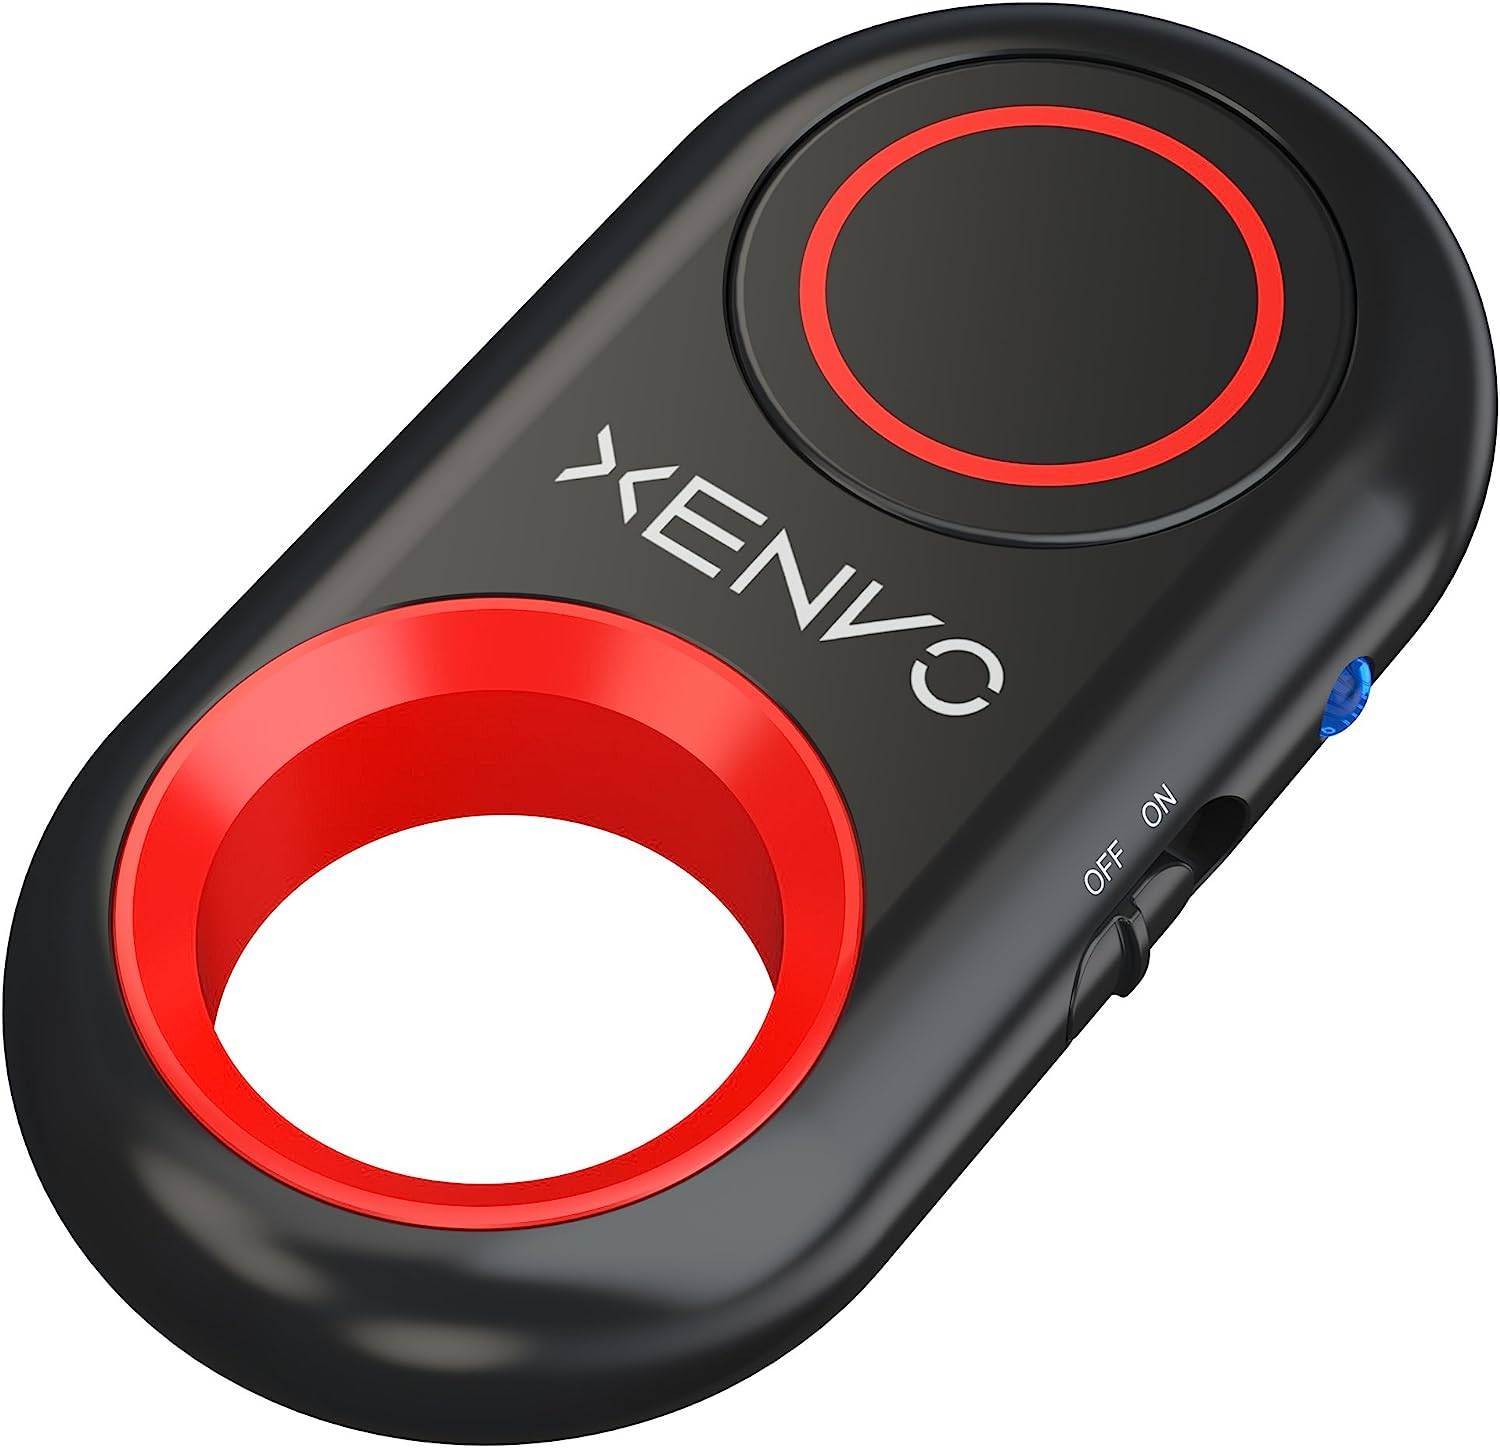 Xenvo Shutterbug - Camera Shutter Remote Control